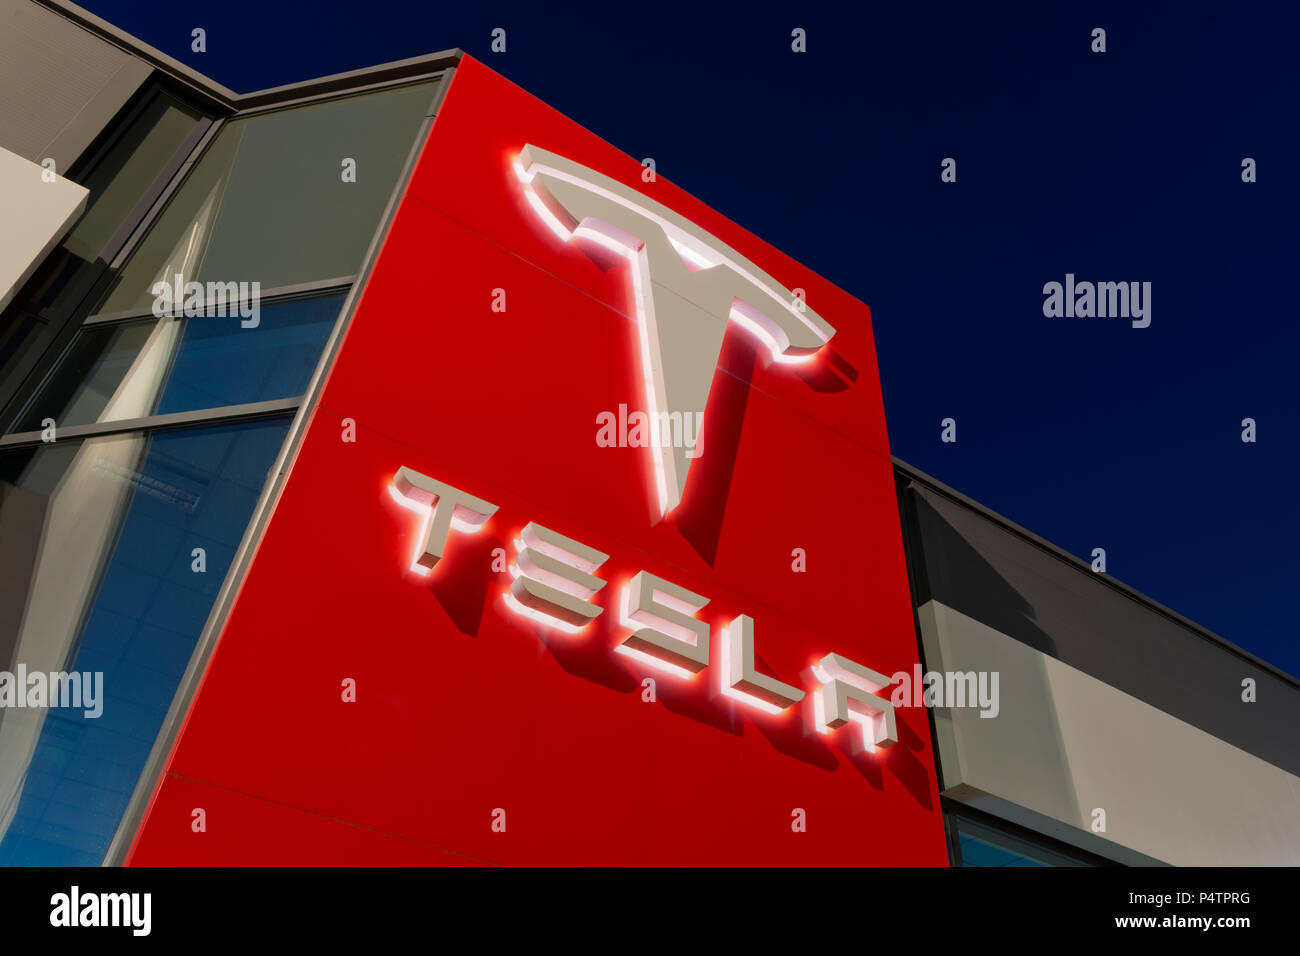 Señalización para el Tesla Motor Company en nigtht fuera uno de sus showrooms en el sur de Manchester, Reino Unido. Foto de stock